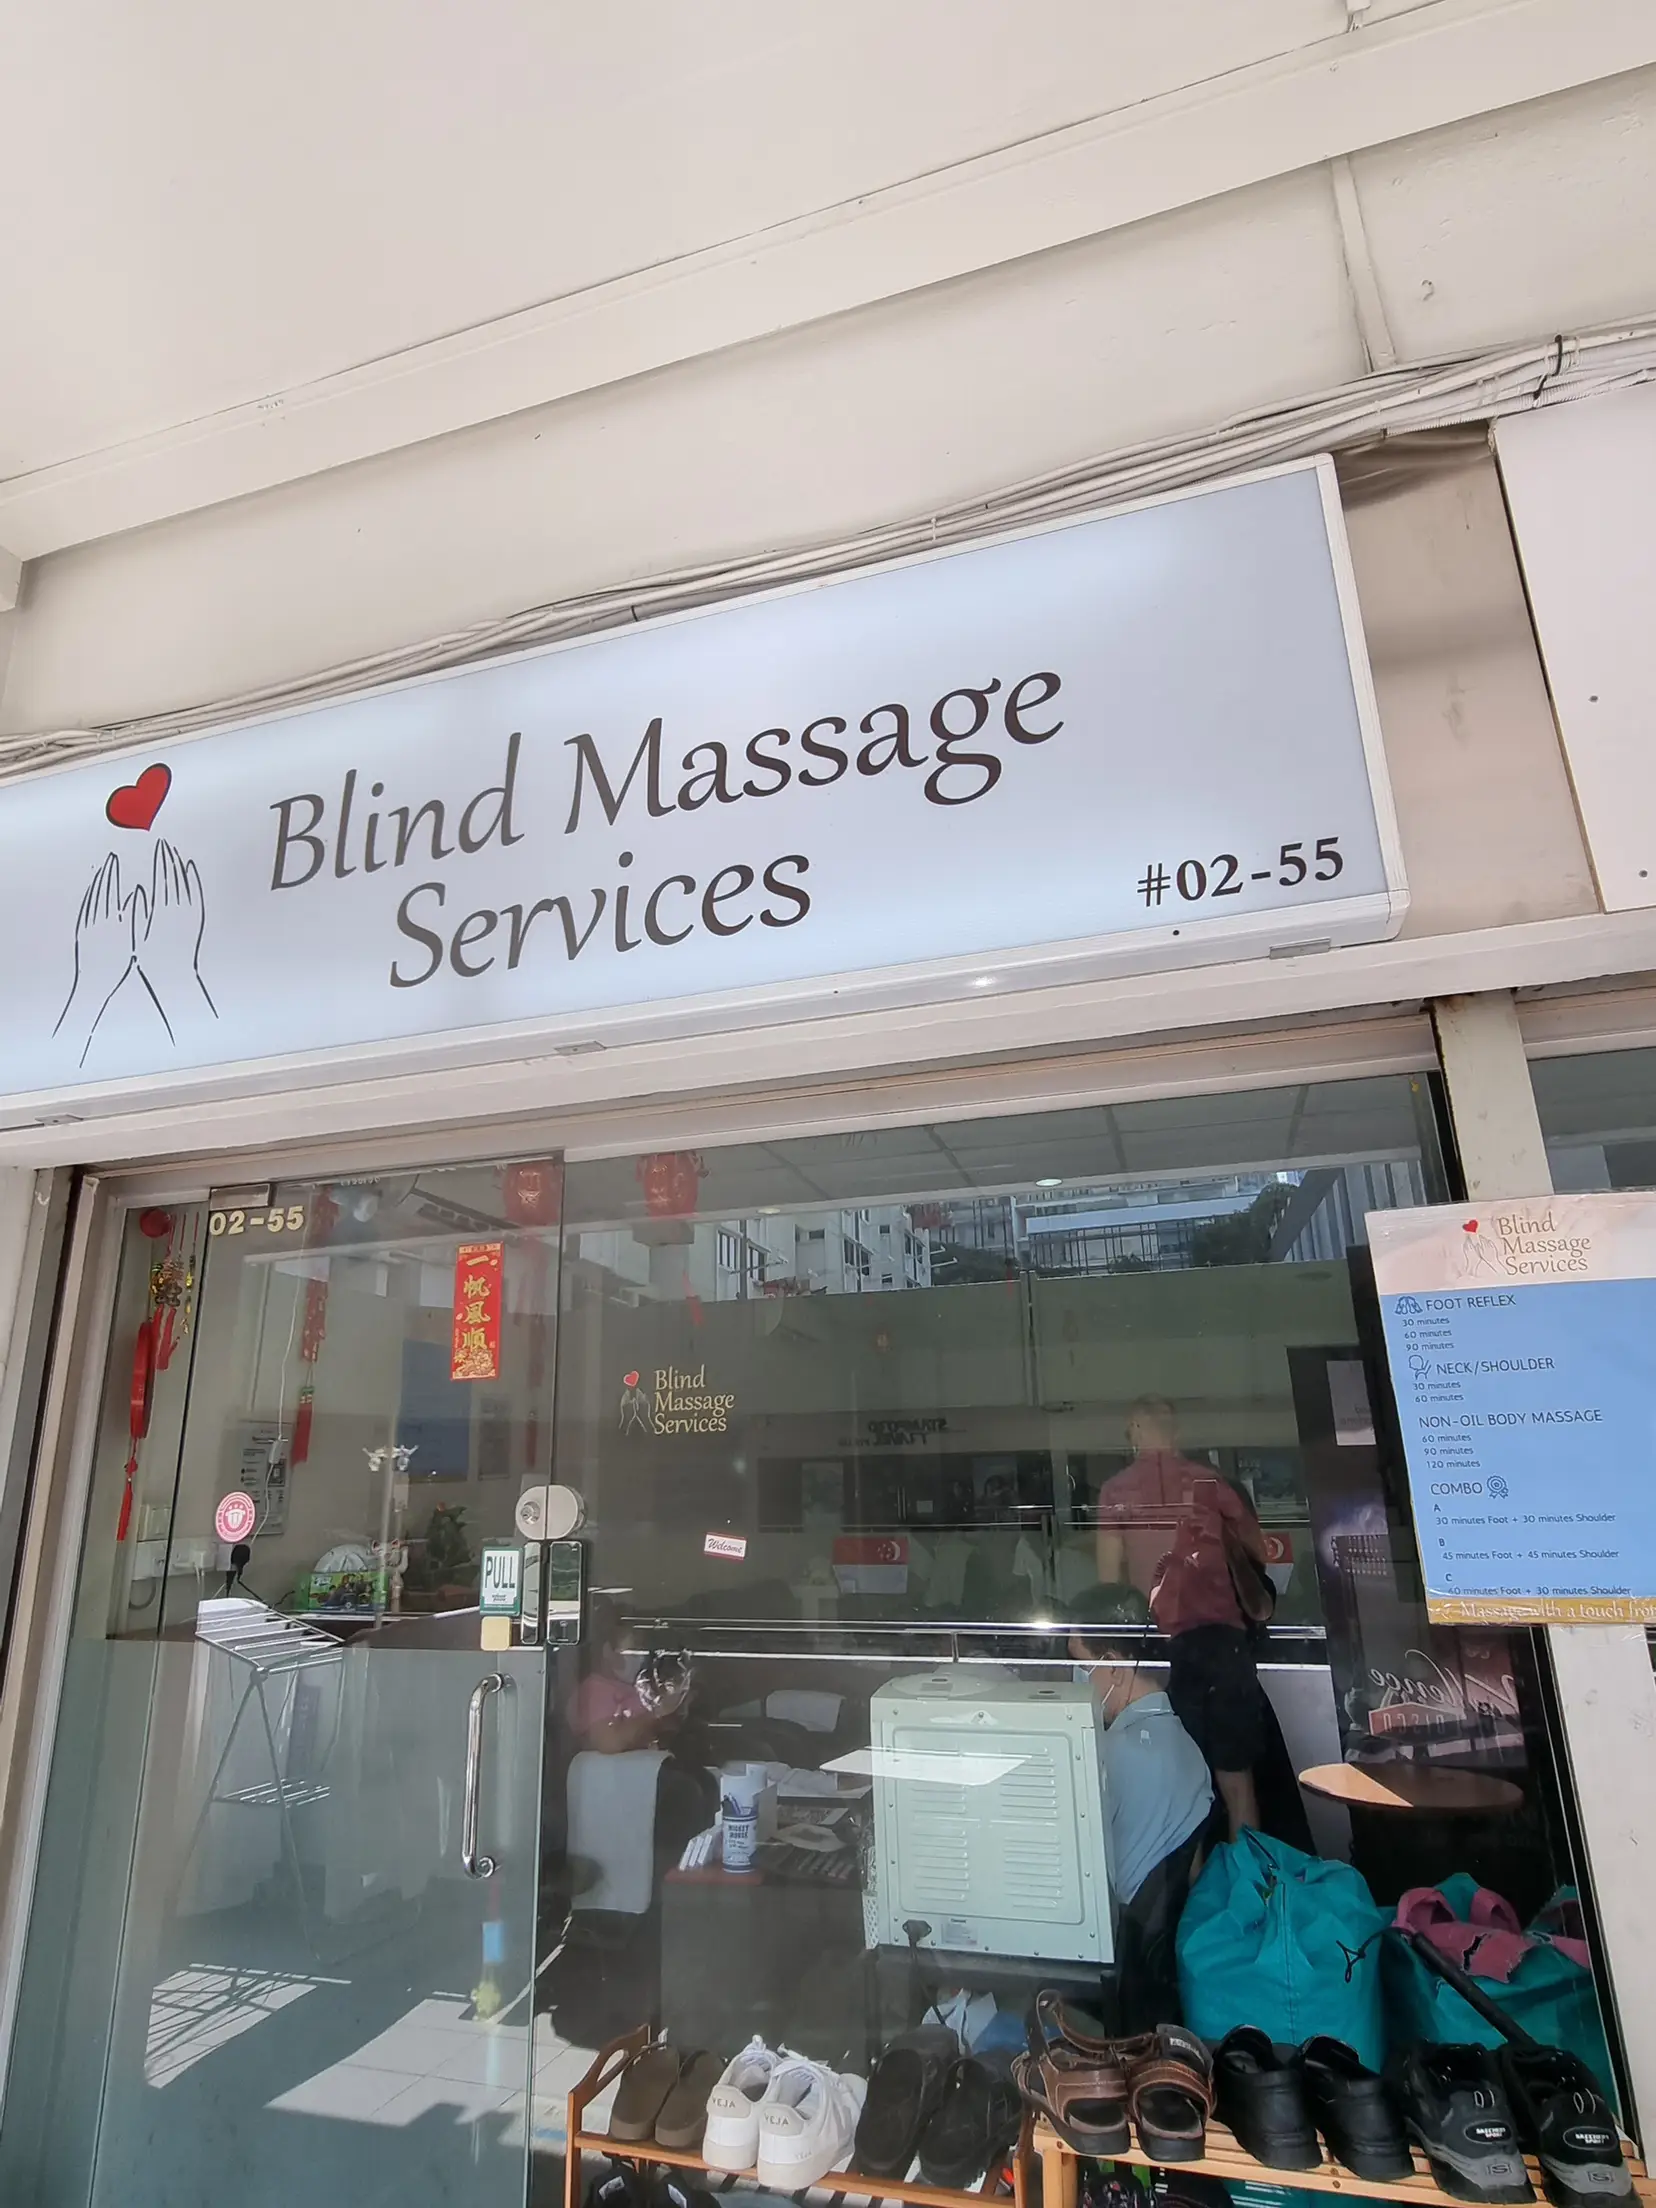 Blind massage | shiok or not? 's images(2)